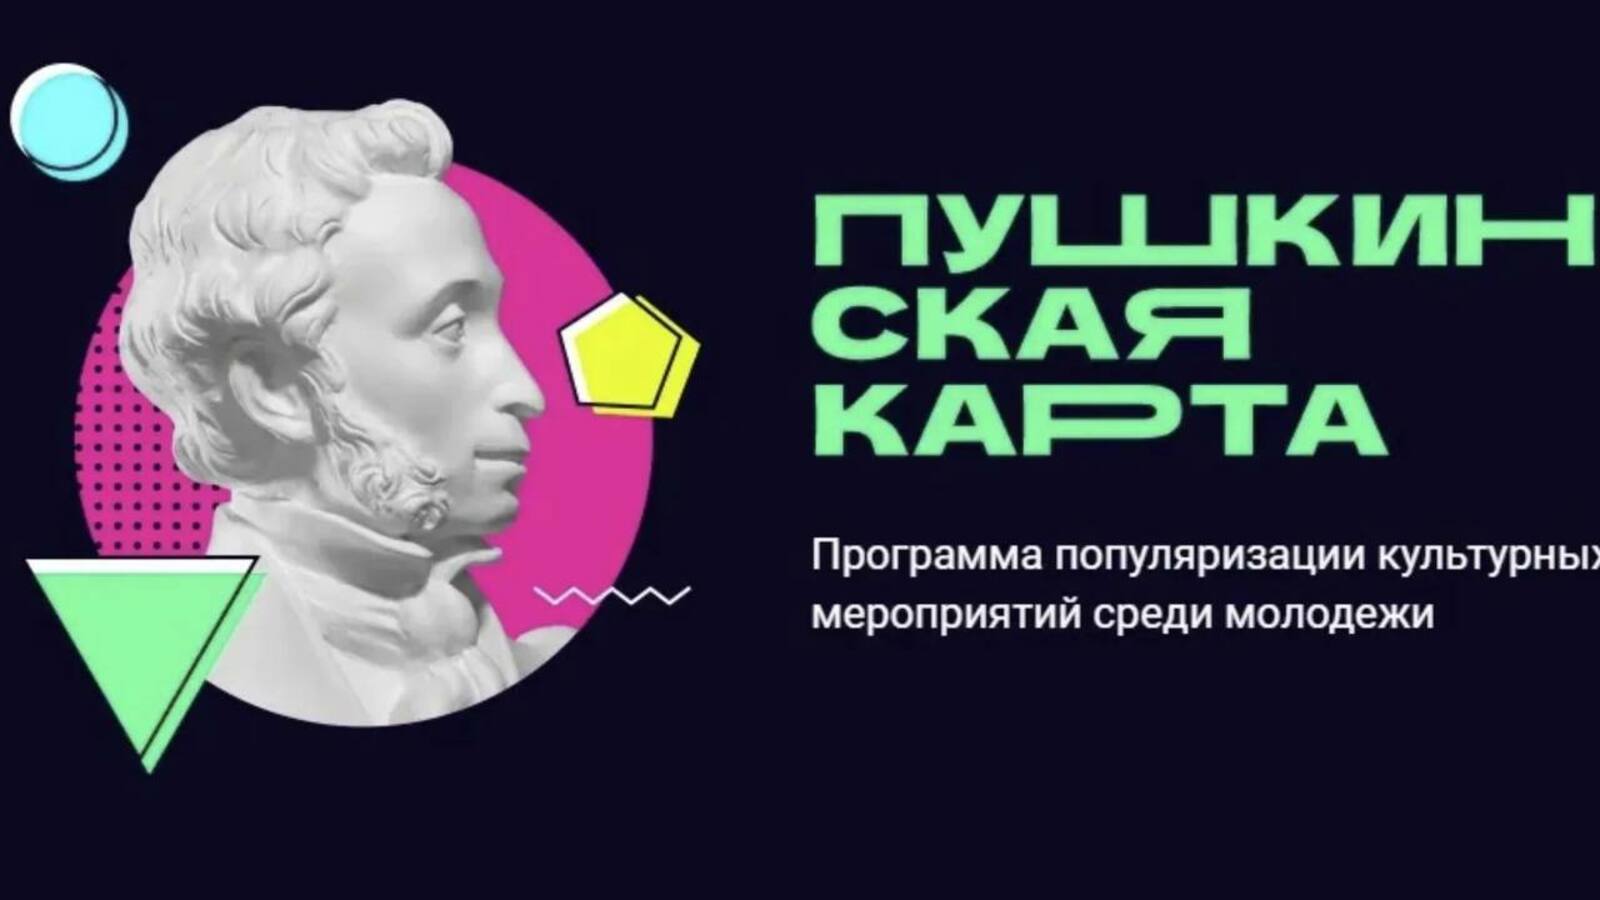 В Башкирии зарегистрирован первый факт мошенничества с «Пушкинской картой»